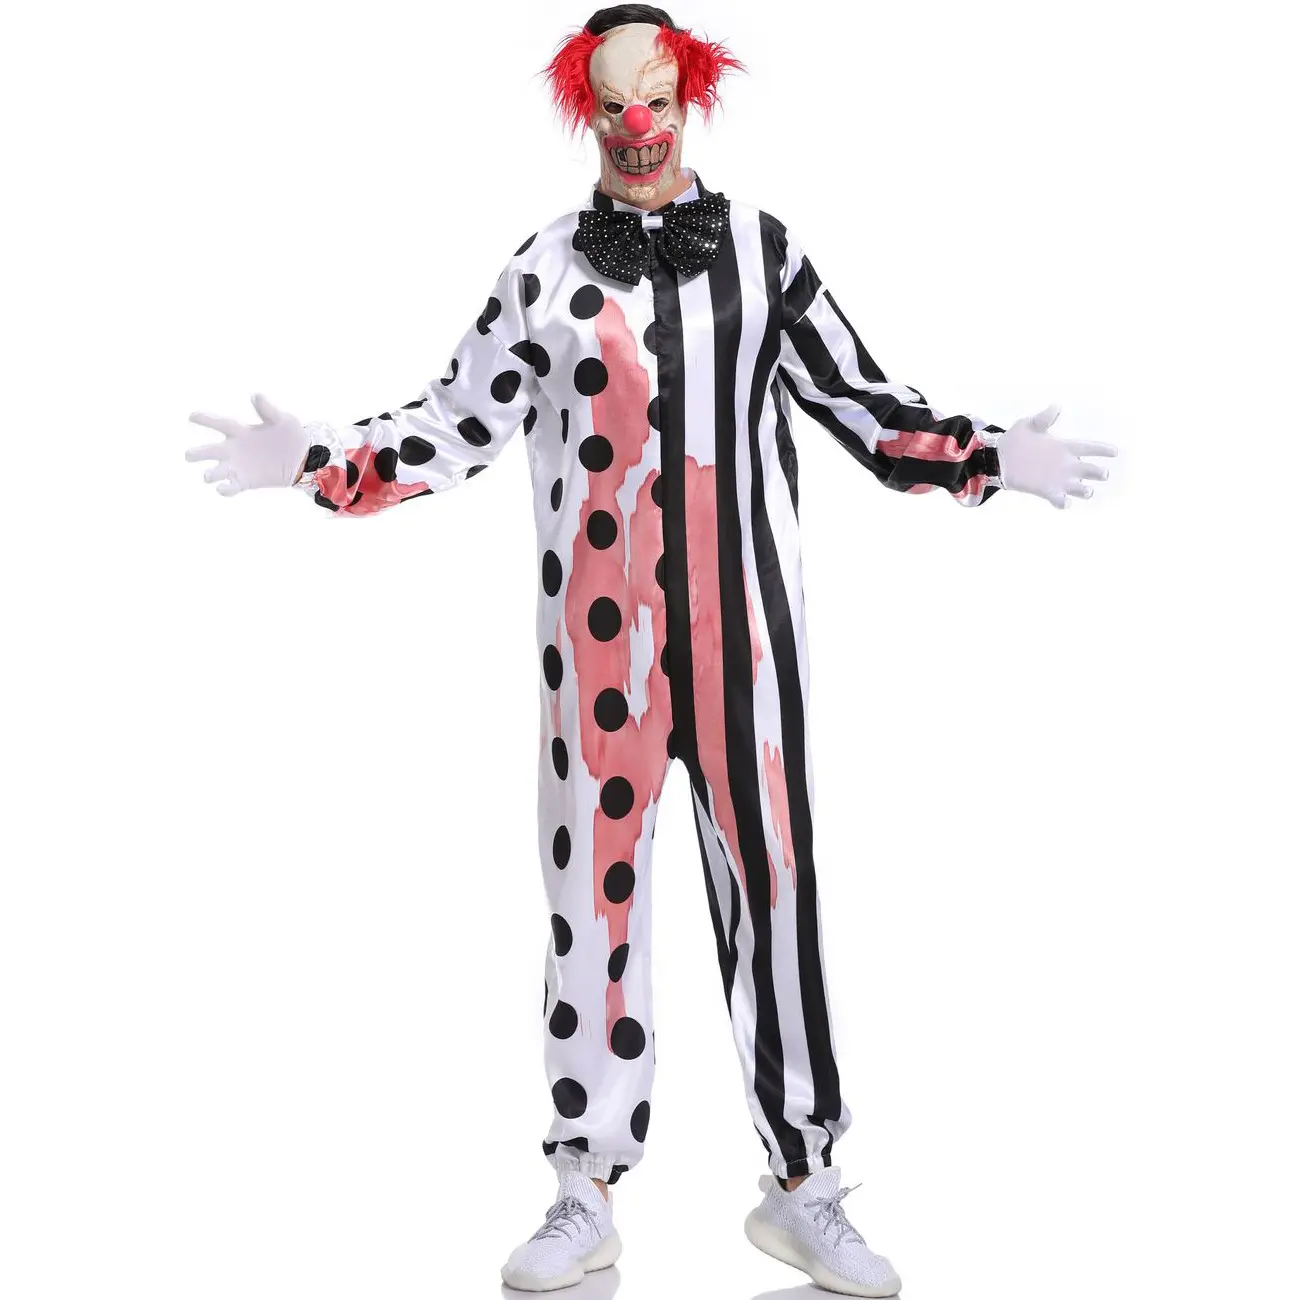 Costume da Clown adulto di Halloween Costume da festa Cosplay Costume carnevale colonia Costume da Clown 1 pezzo immagine Unisex Party Fun M-xl